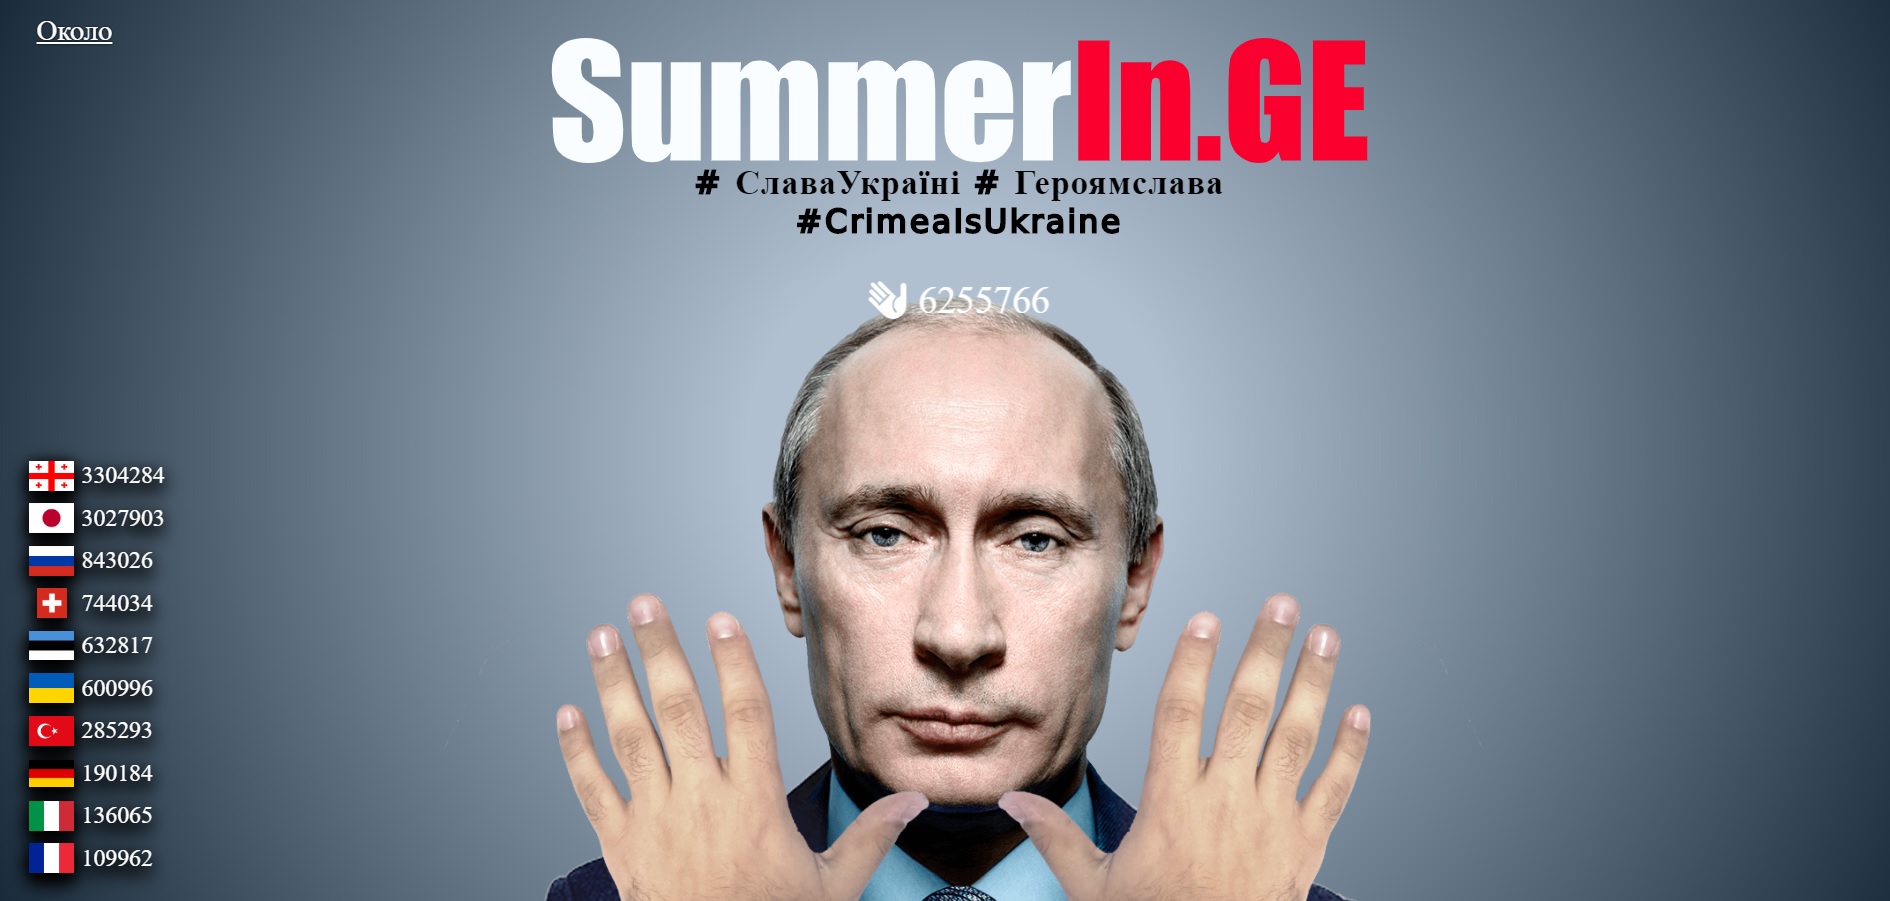 	Пощечина Путину: забавный сервис в сети позволяет отвесить оплеуху президенту России